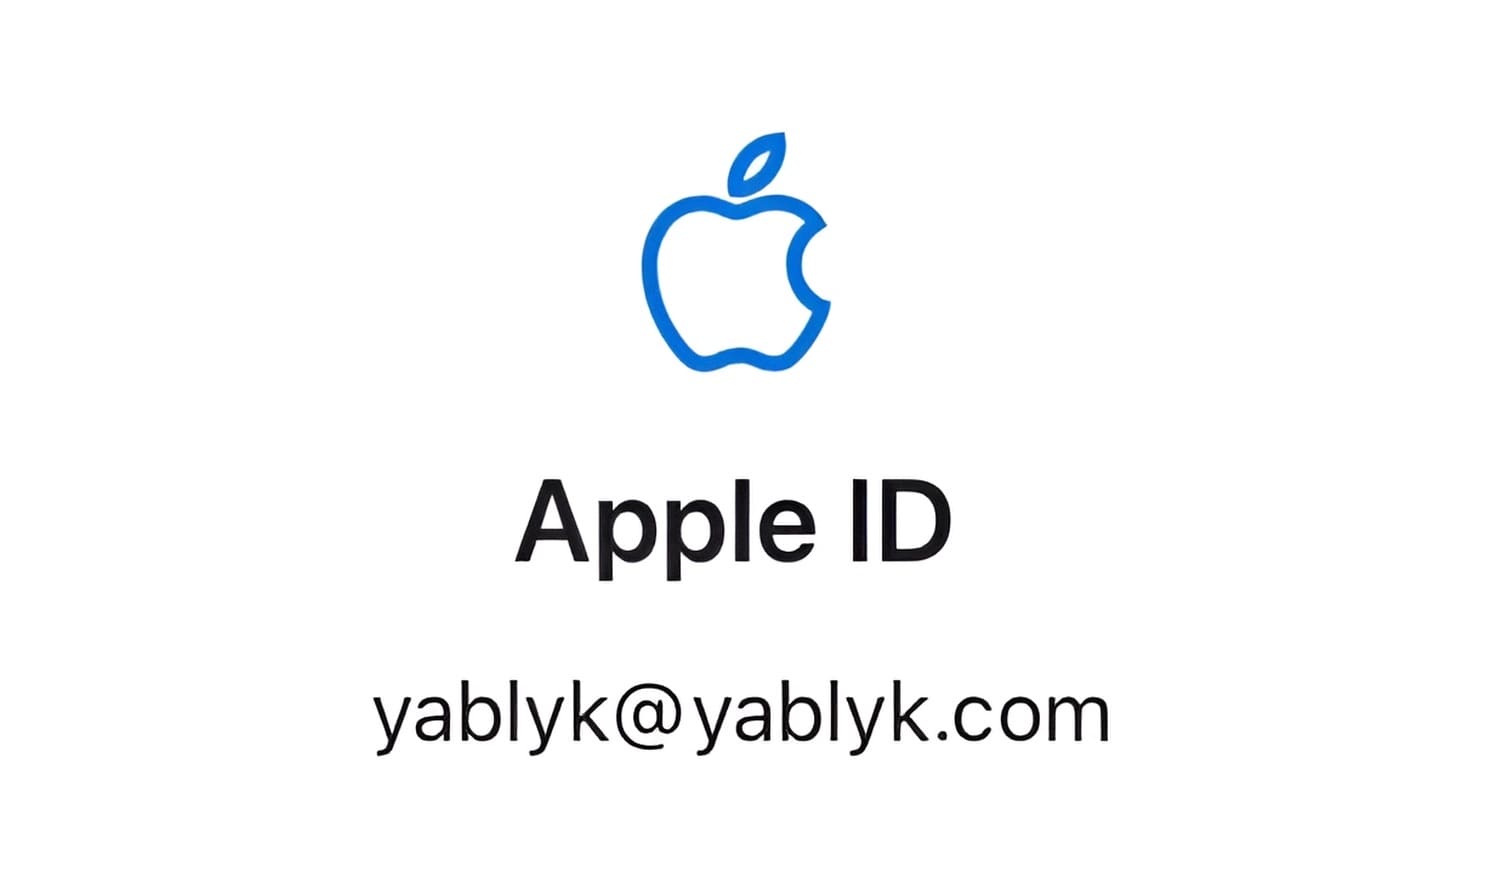 Как привязать Apple ID к новому E-mail